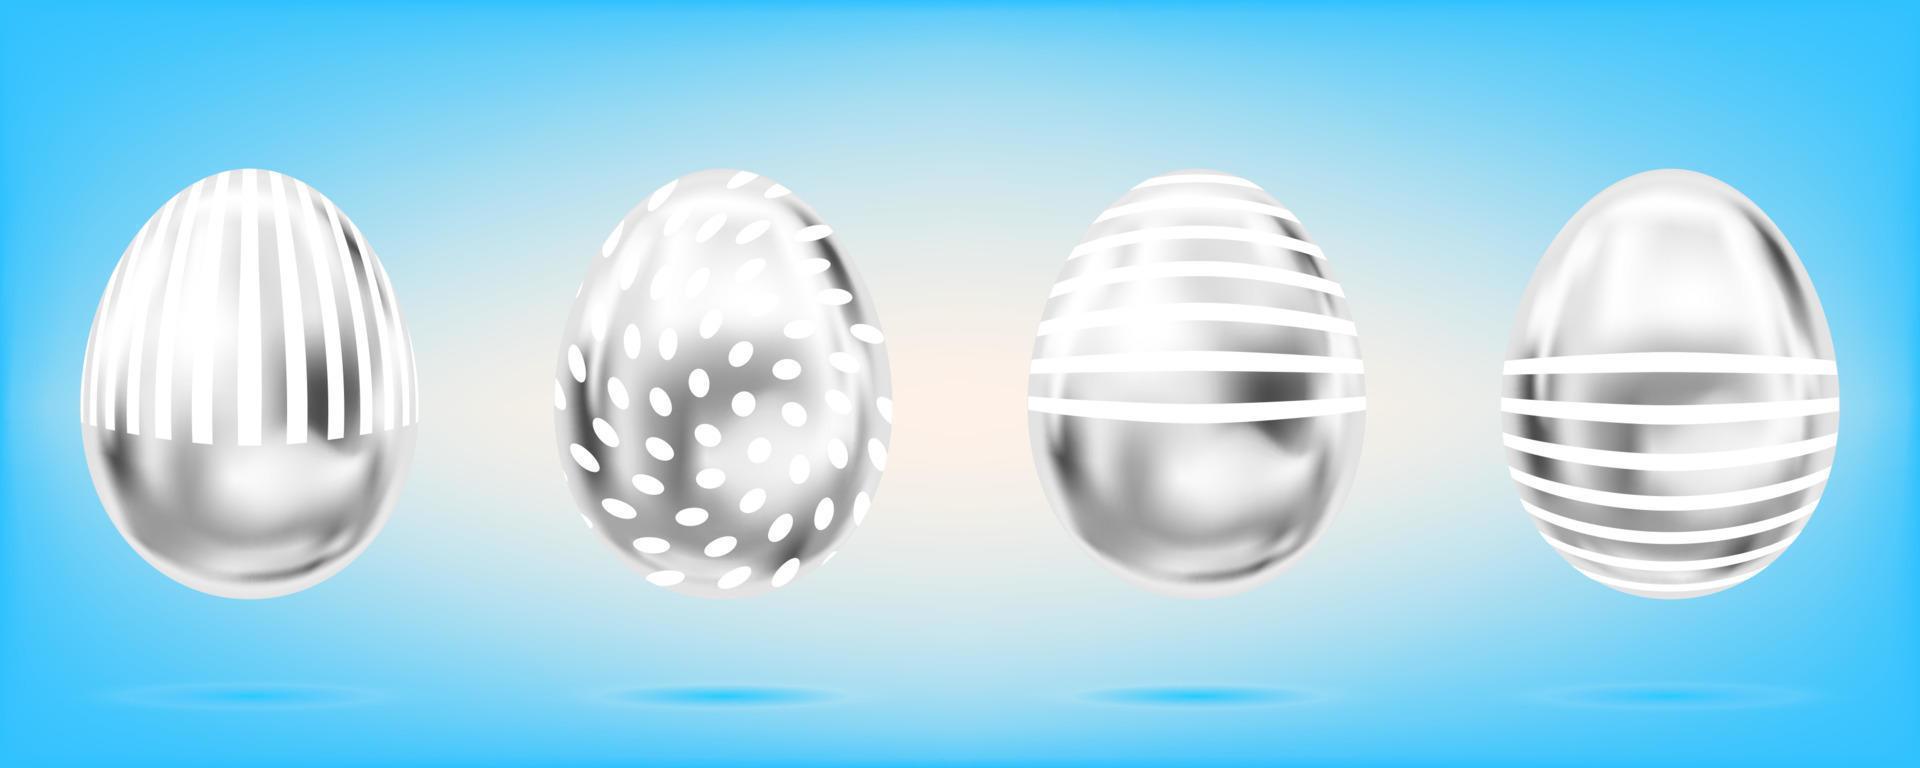 vier silberne Eier auf dem himmelblauen Hintergrund. isolierte objekte für ostern. Streifen und Punkte verziert vektor